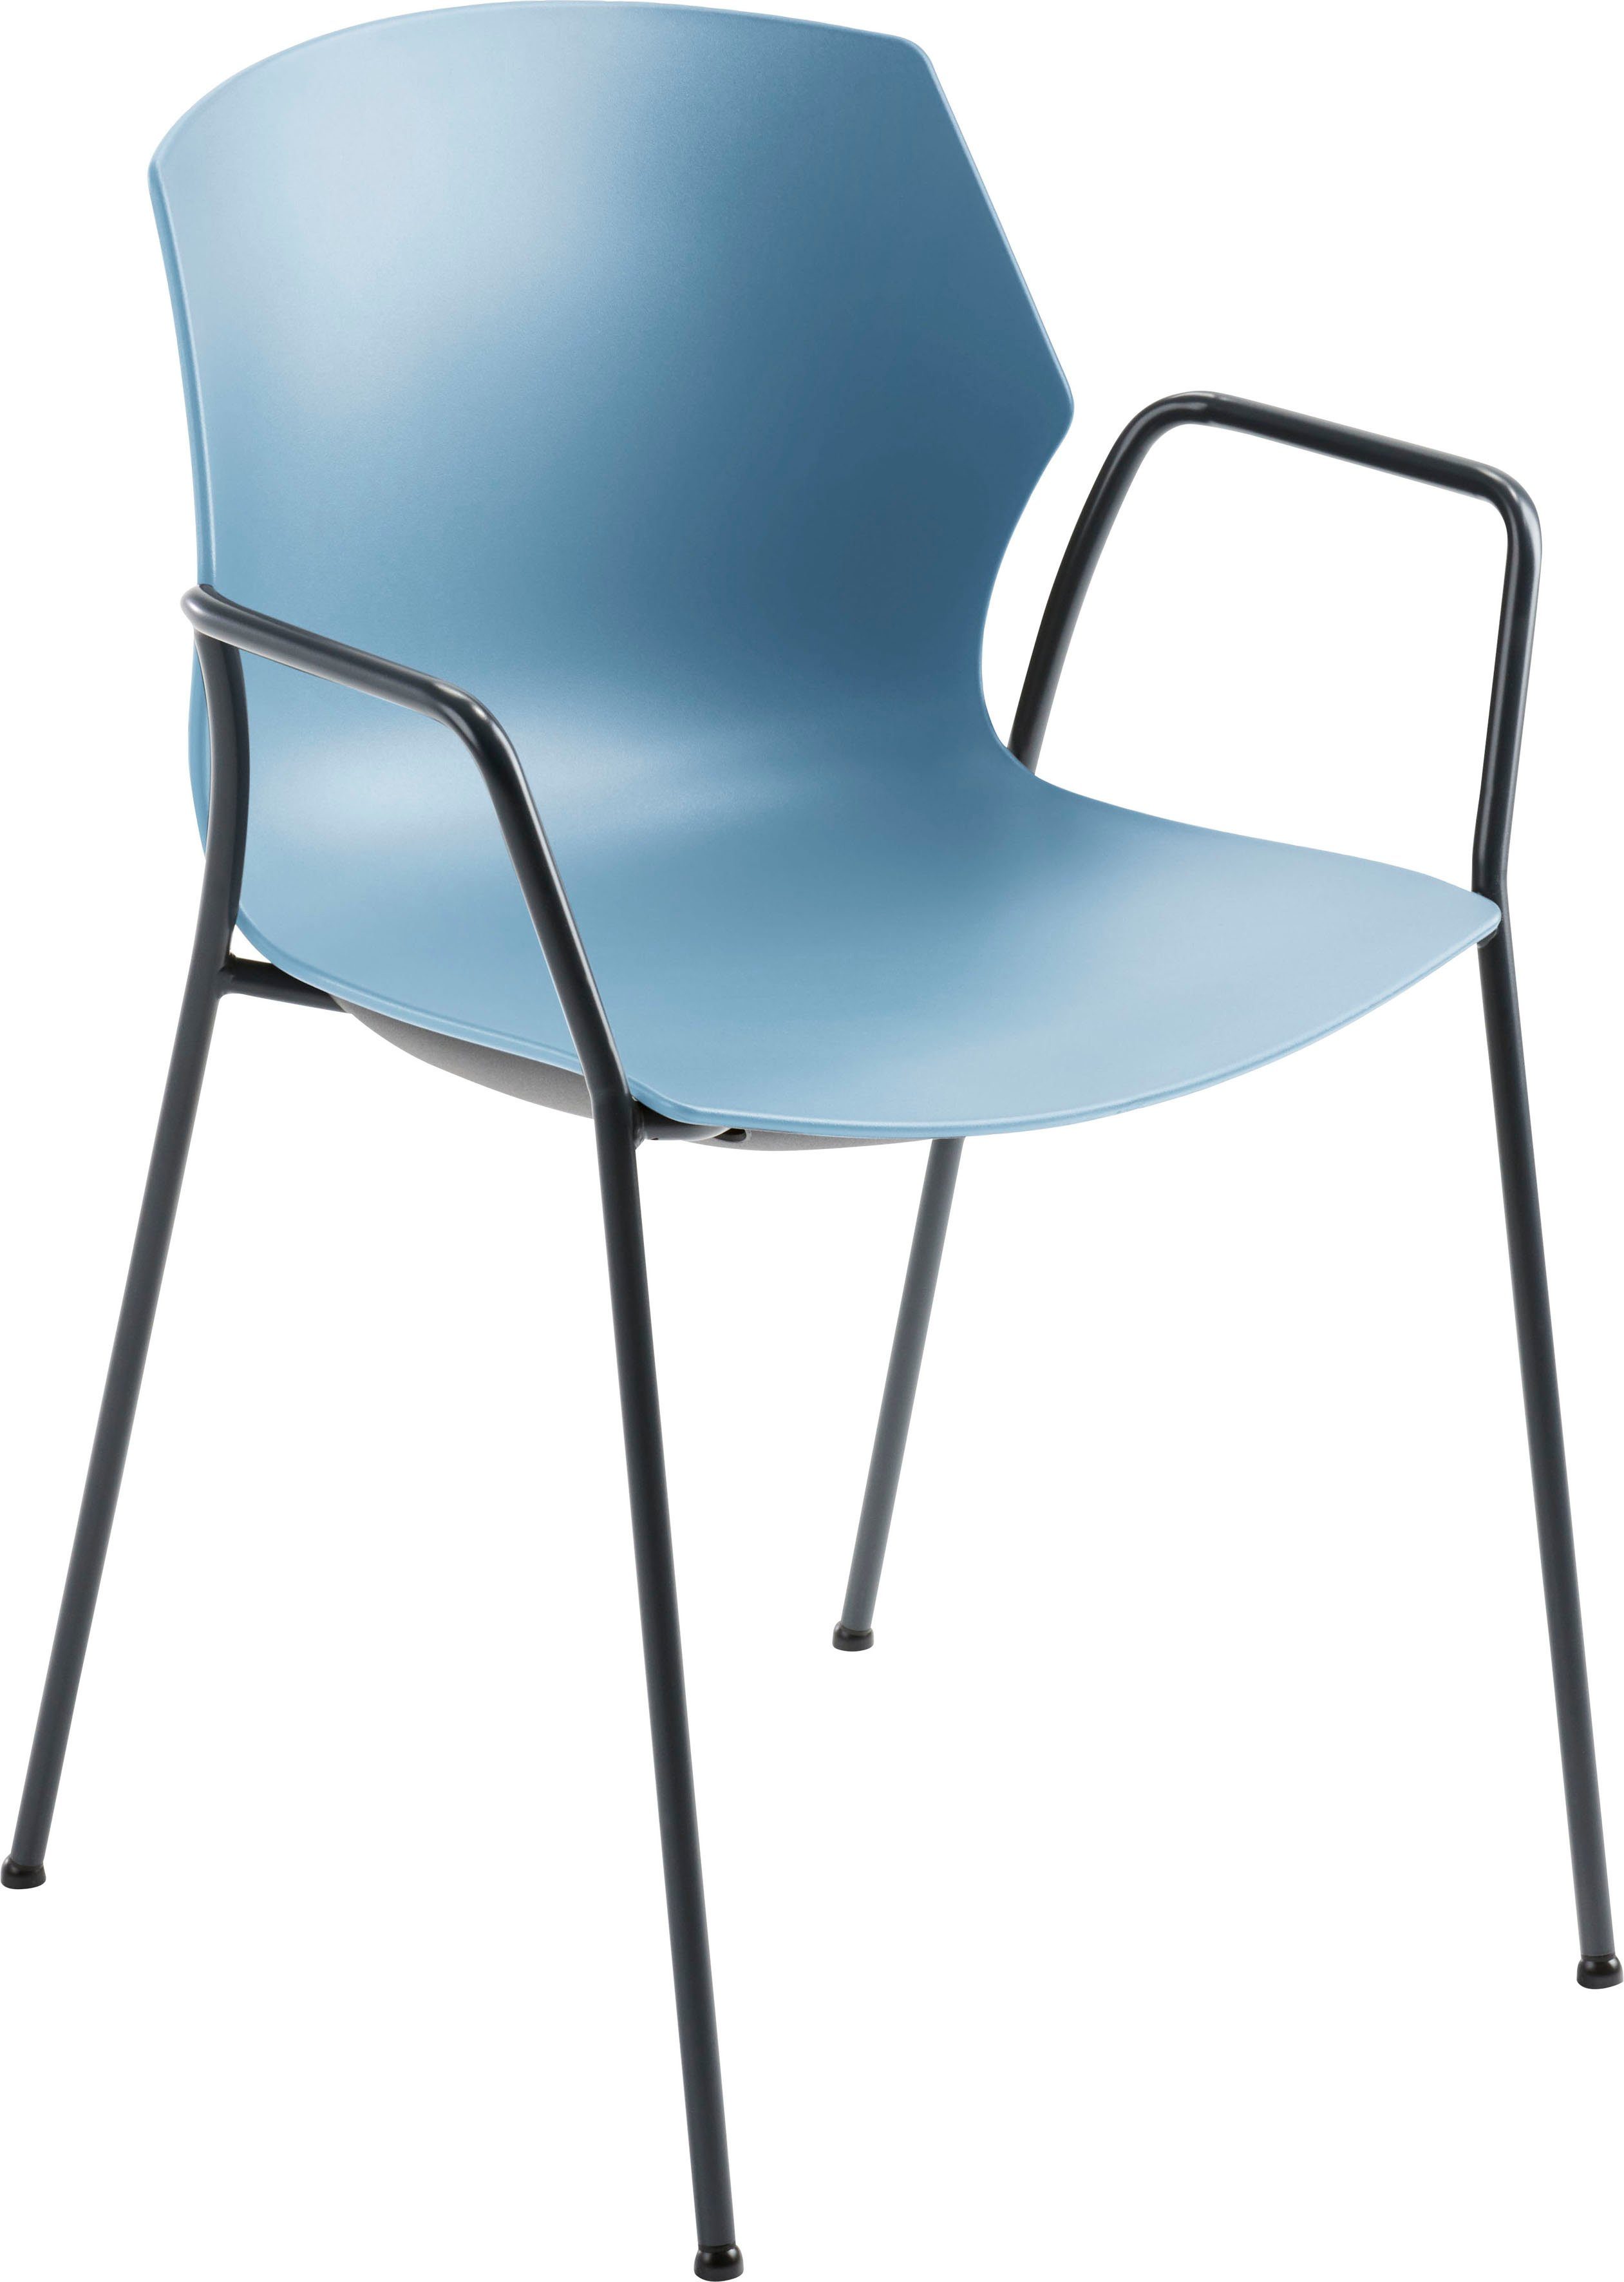 Mayer Sitzmöbel Besucherstuhl 2510, stapelbar bis 6 Stück Graublau | Graublau